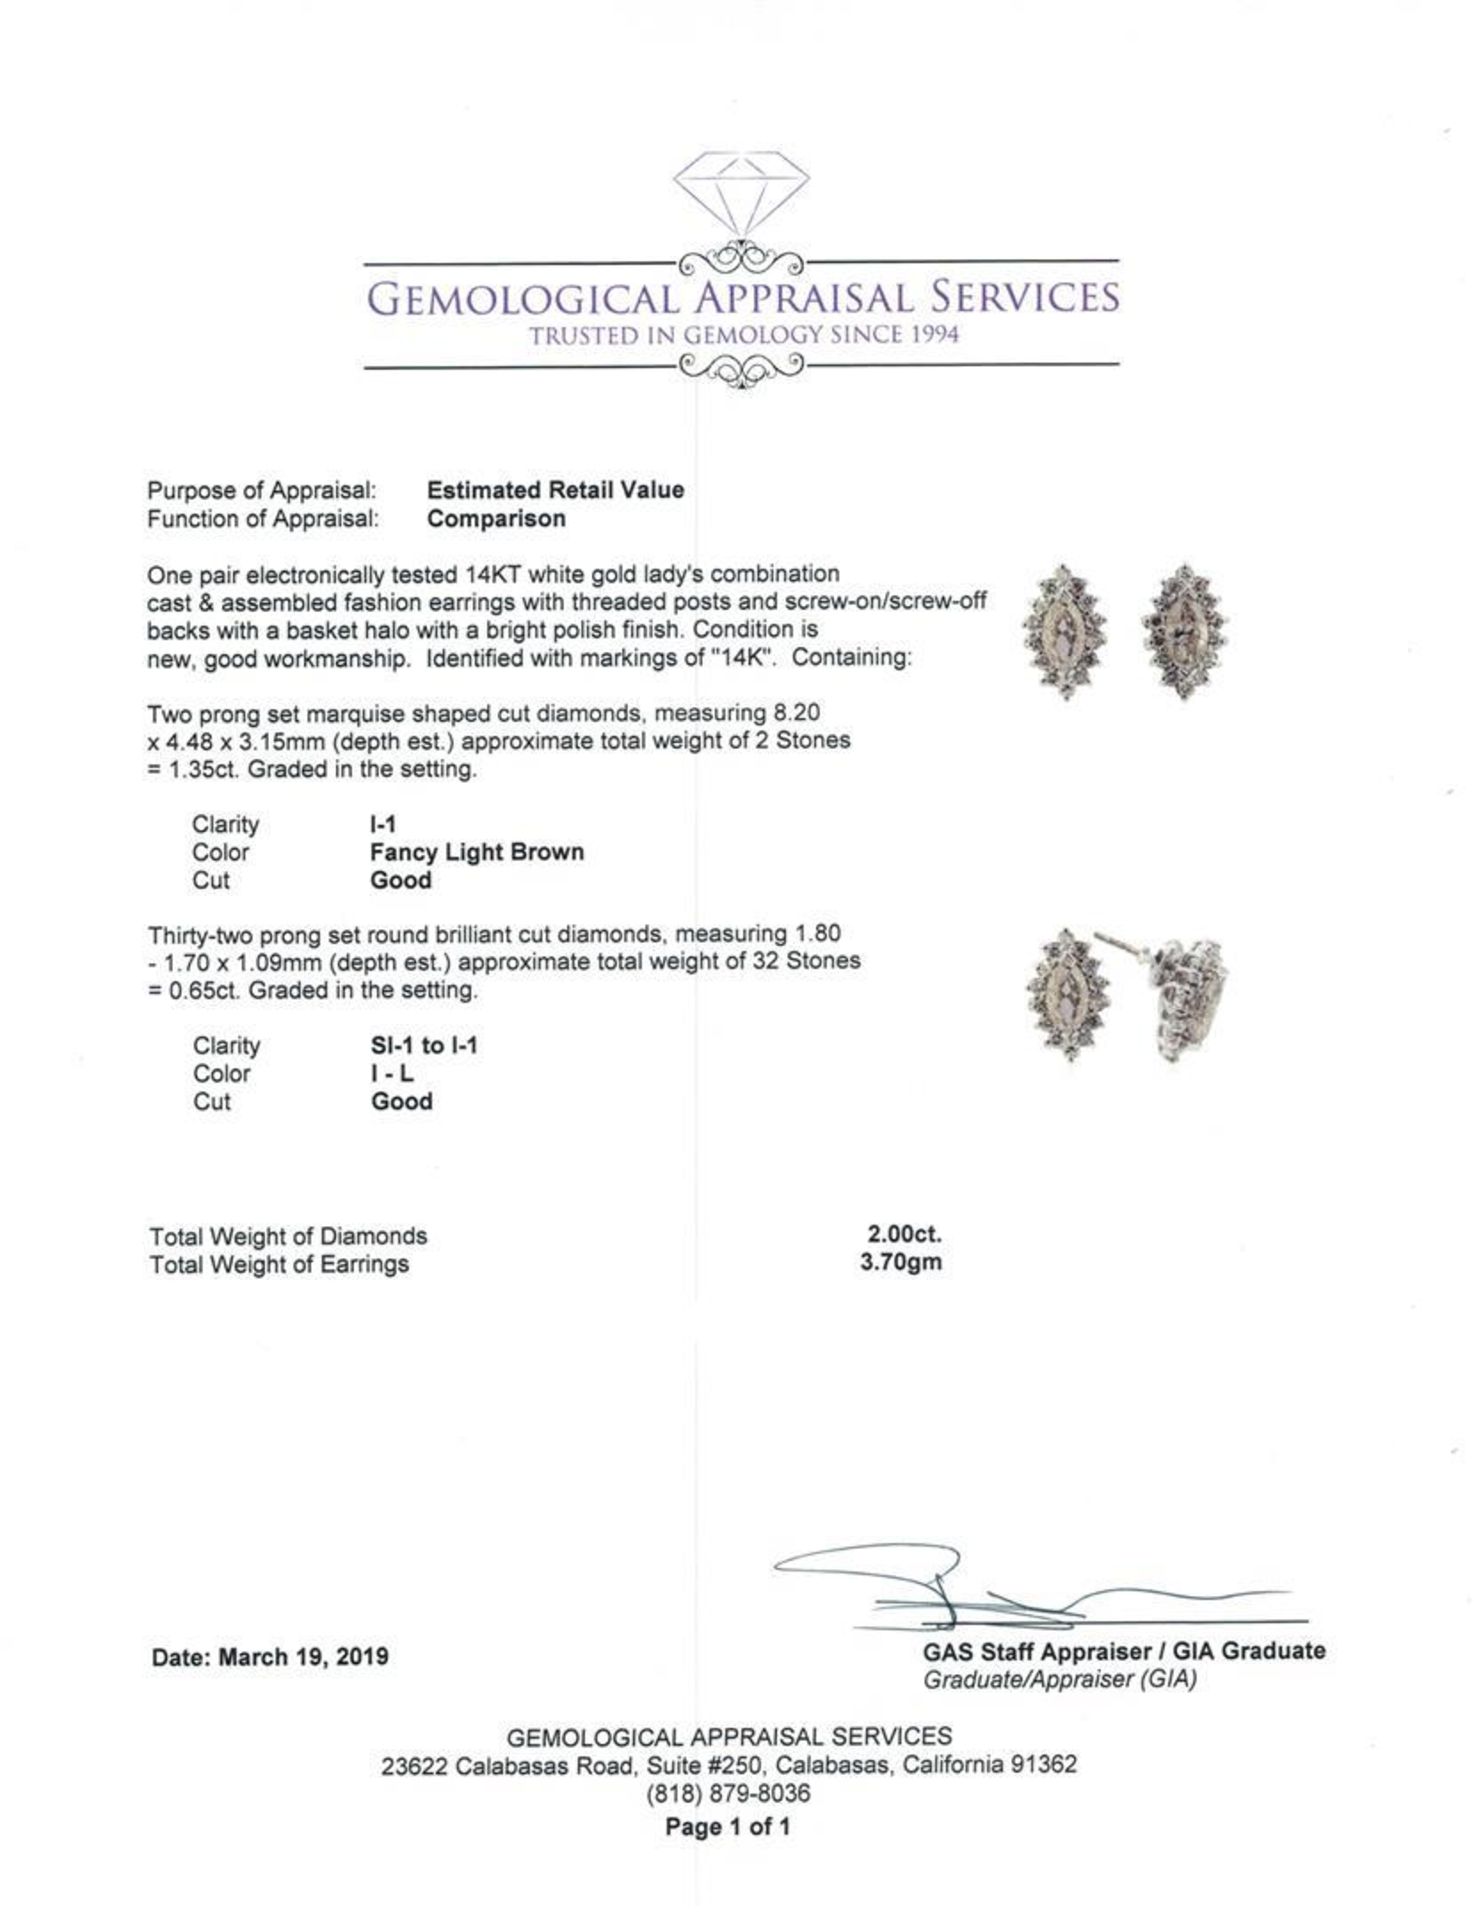 2.00 ctw Diamond Earrings - 14KT White Gold - Image 3 of 3